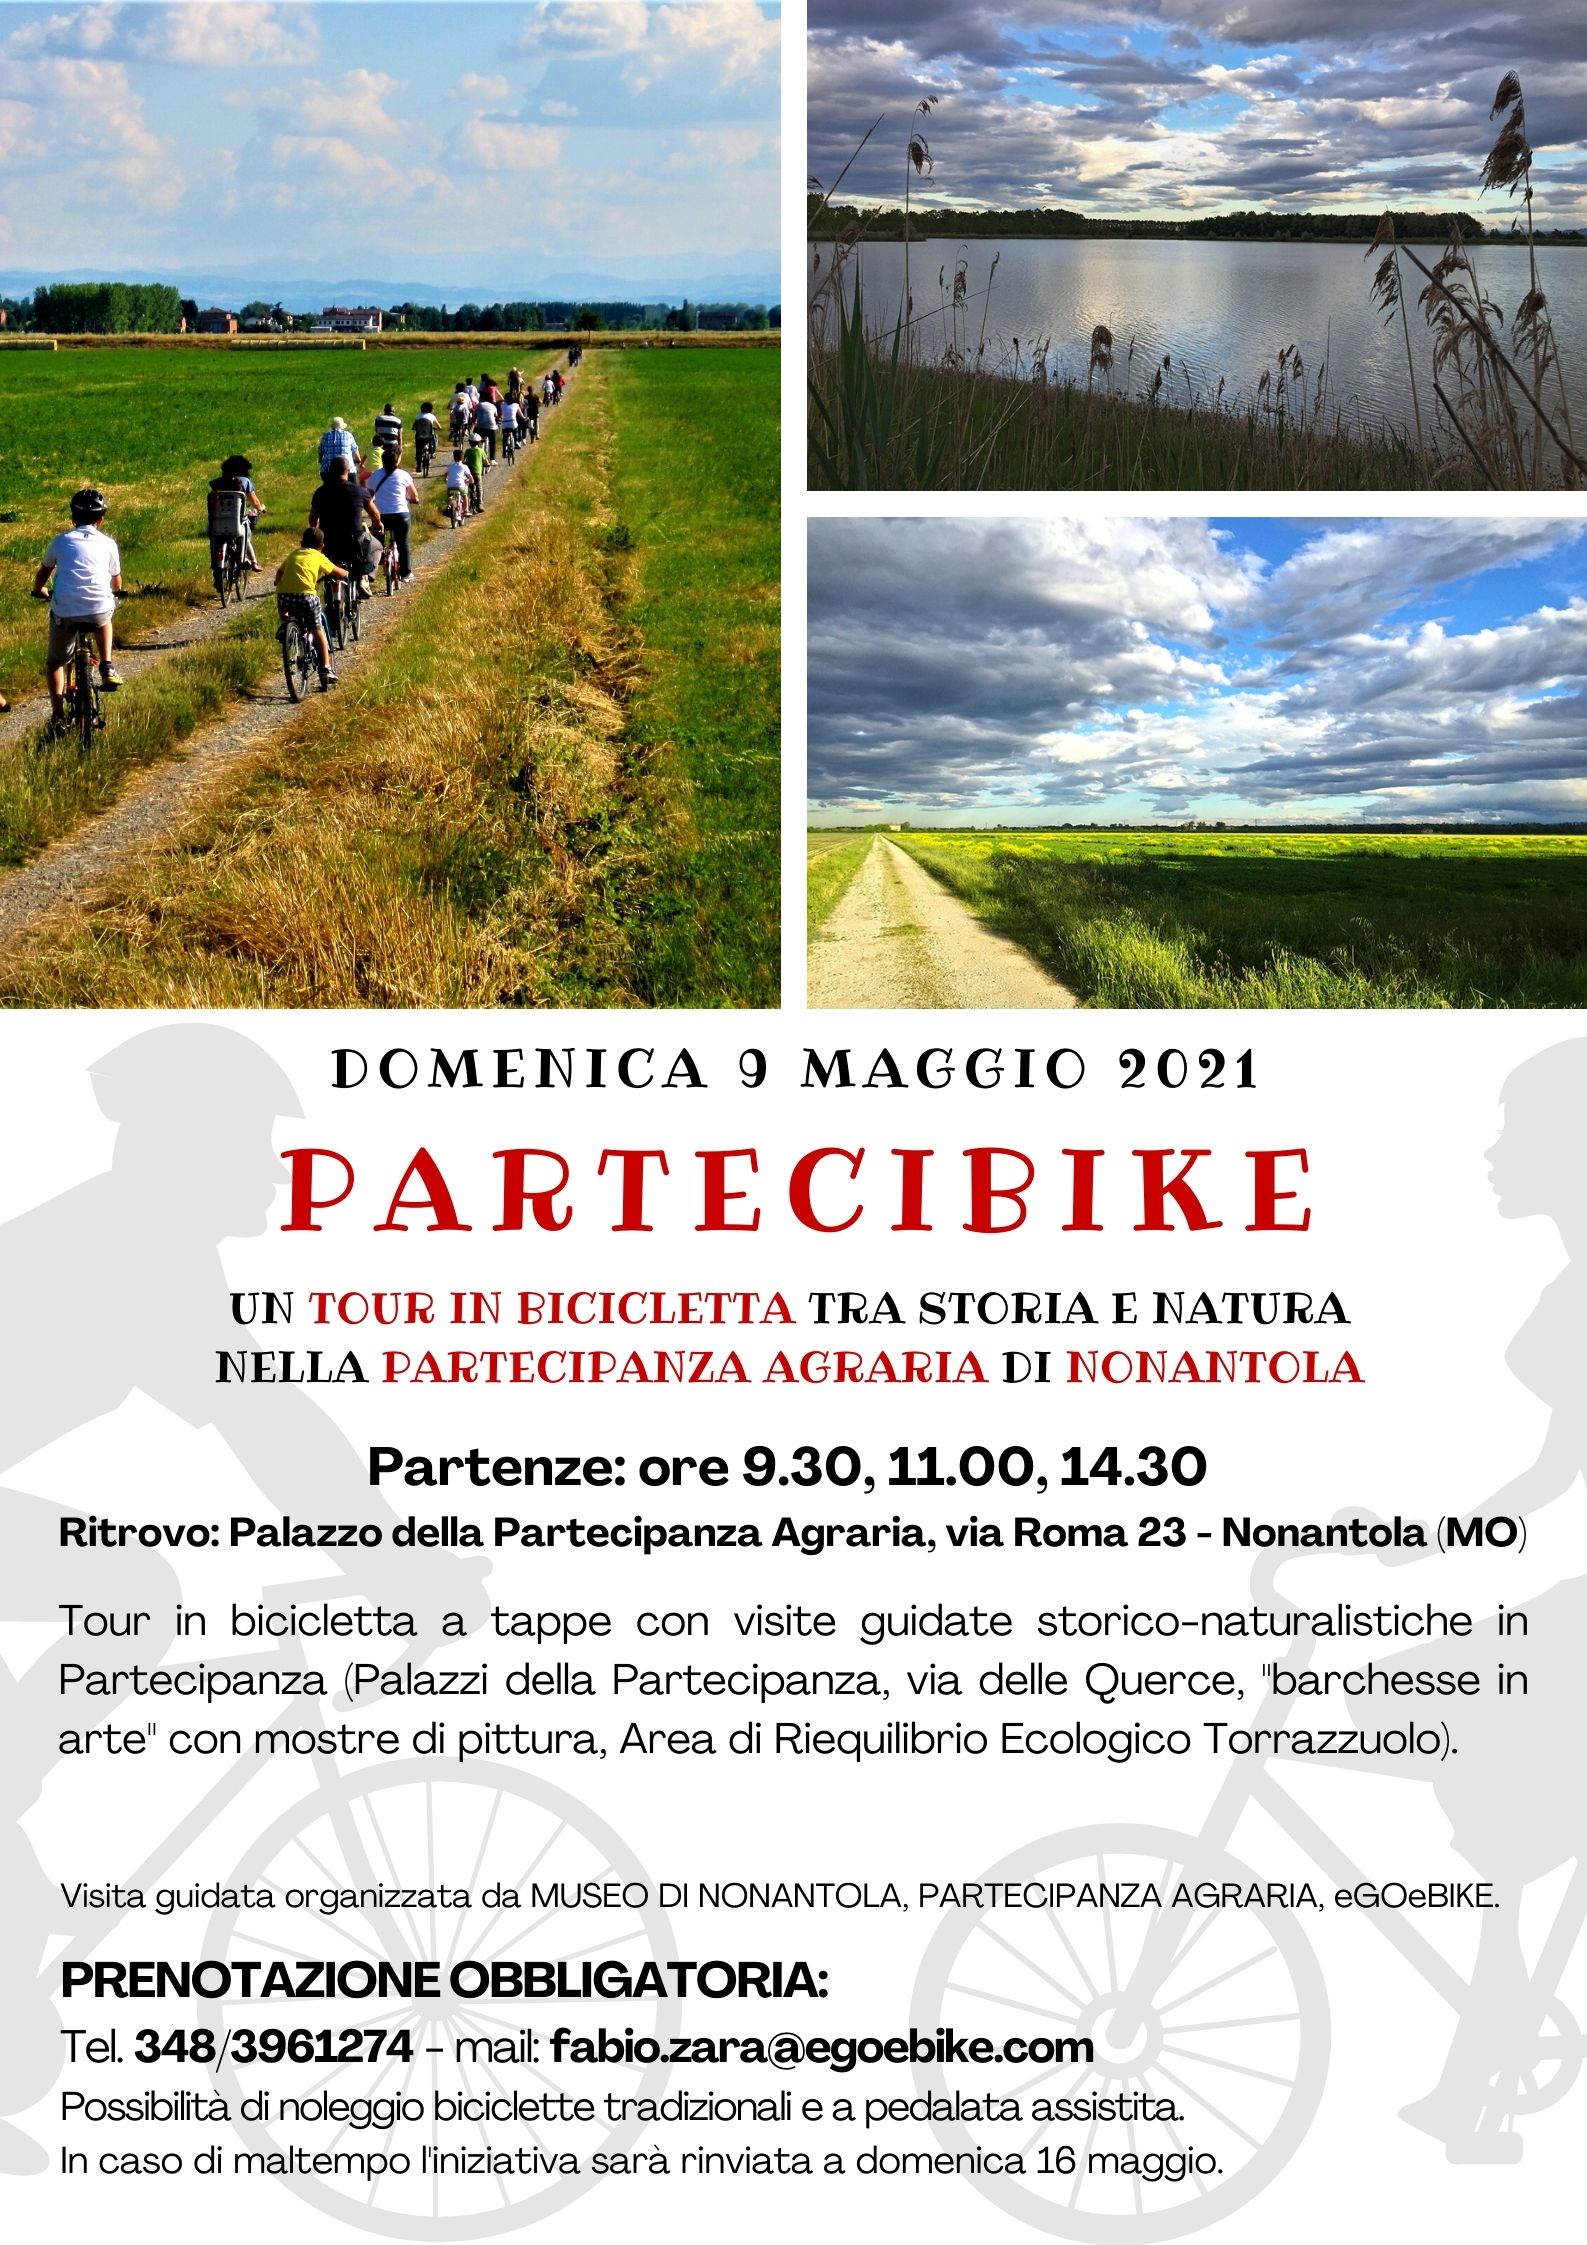 PARTECIBIKE. Un tour in bicicletta tra storia e natura nella Partecipanza Agraria di Nonantola